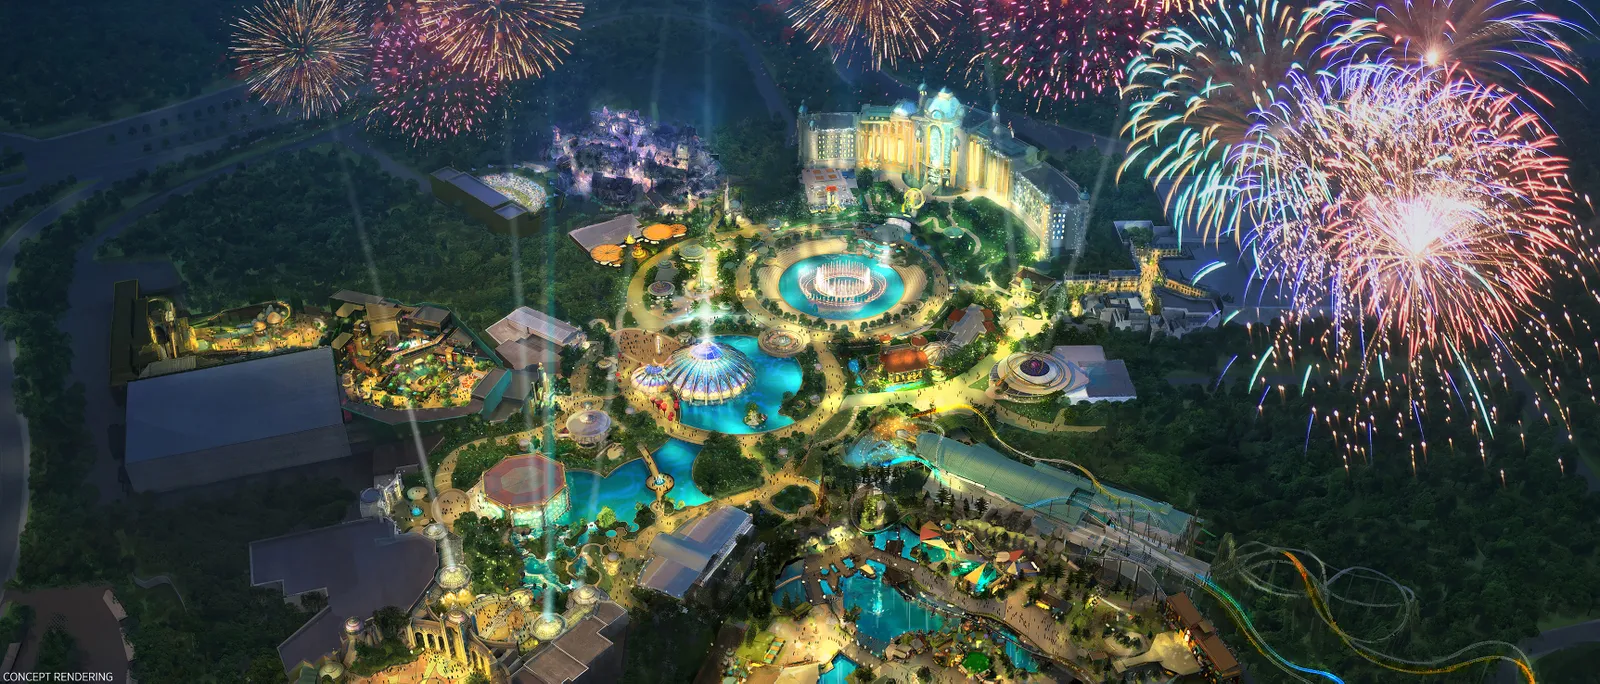 Todo lo que Sabemos Acerca de Epic Universe de Universal, el Nuevo Parque Temático de Orlando